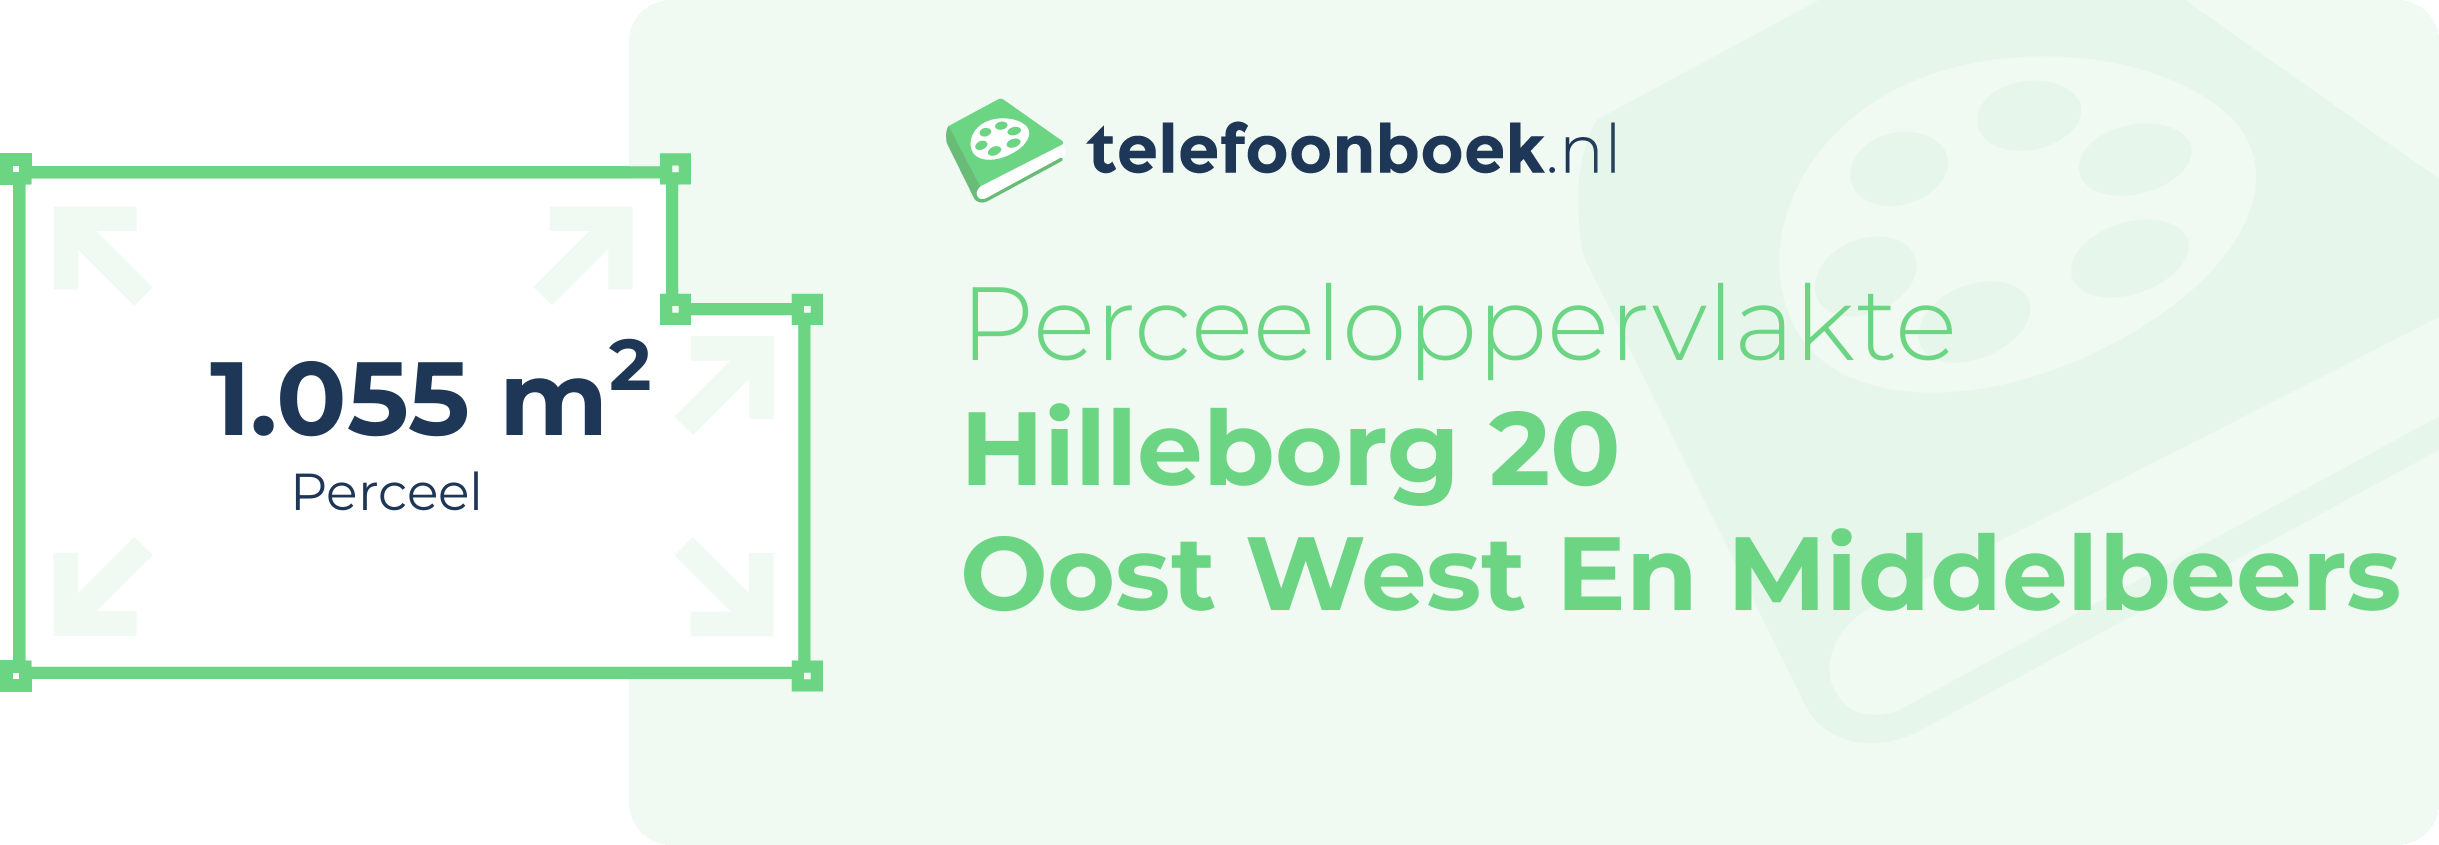 Perceeloppervlakte Hilleborg 20 Oost West En Middelbeers